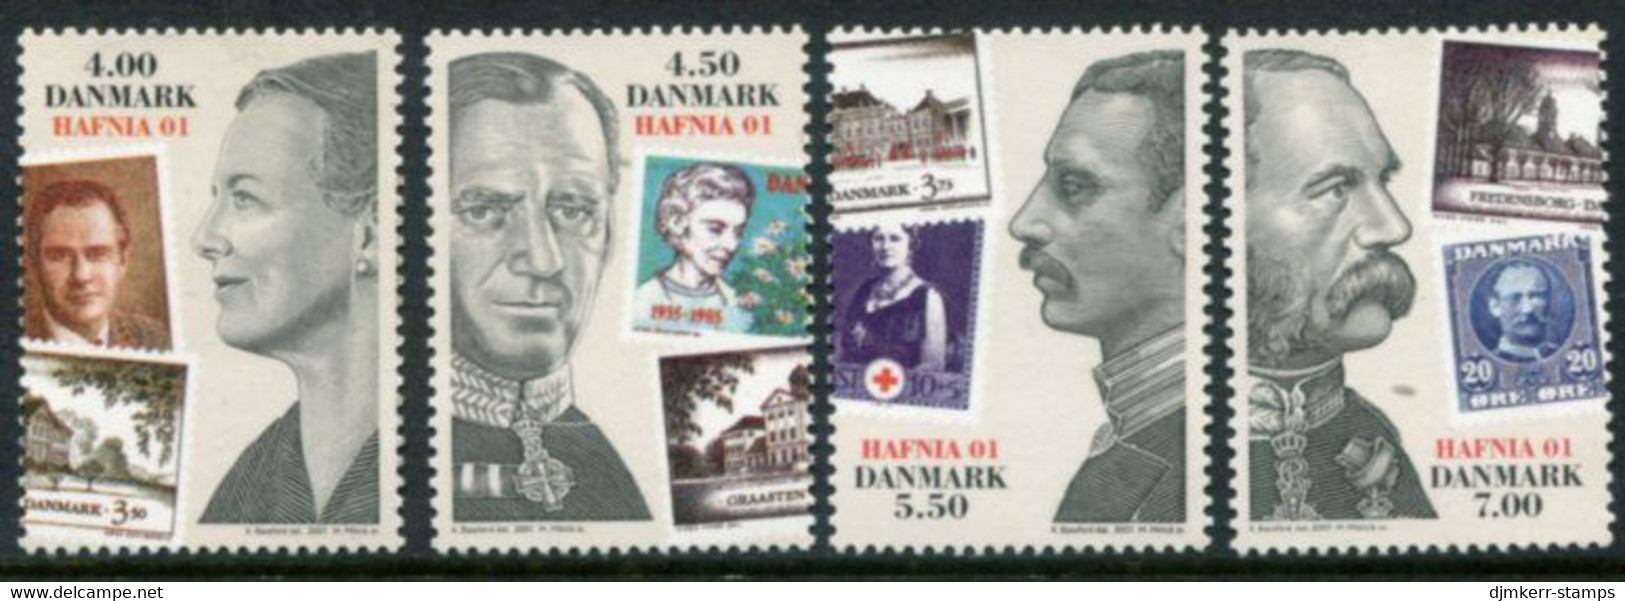 DENMARK 2001 HAFNIA'01 Stamp Exhibition MNH / **.. Michel 1287-90 - Neufs